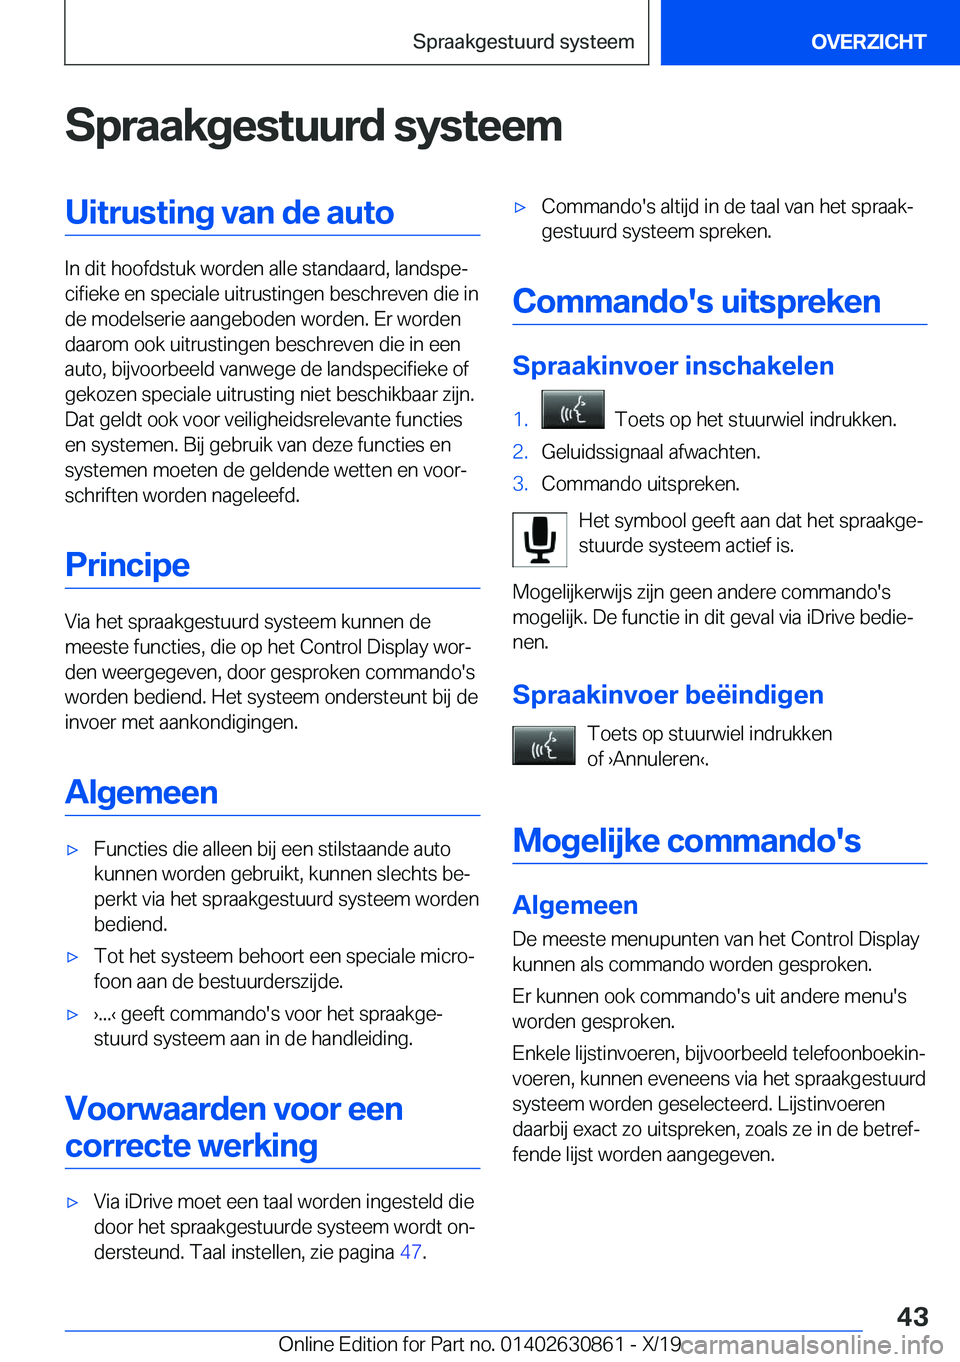 BMW 4 SERIES GRAN COUPE 2020  Instructieboekjes (in Dutch) �S�p�r�a�a�k�g�e�s�t�u�u�r�d��s�y�s�t�e�e�m�U�i�t�r�u�s�t�i�n�g��v�a�n��d�e��a�u�t�o
�I�n��d�i�t��h�o�o�f�d�s�t�u�k��w�o�r�d�e�n��a�l�l�e��s�t�a�n�d�a�a�r�d�,��l�a�n�d�s�p�ej�c�i�f�i�e�k�e�